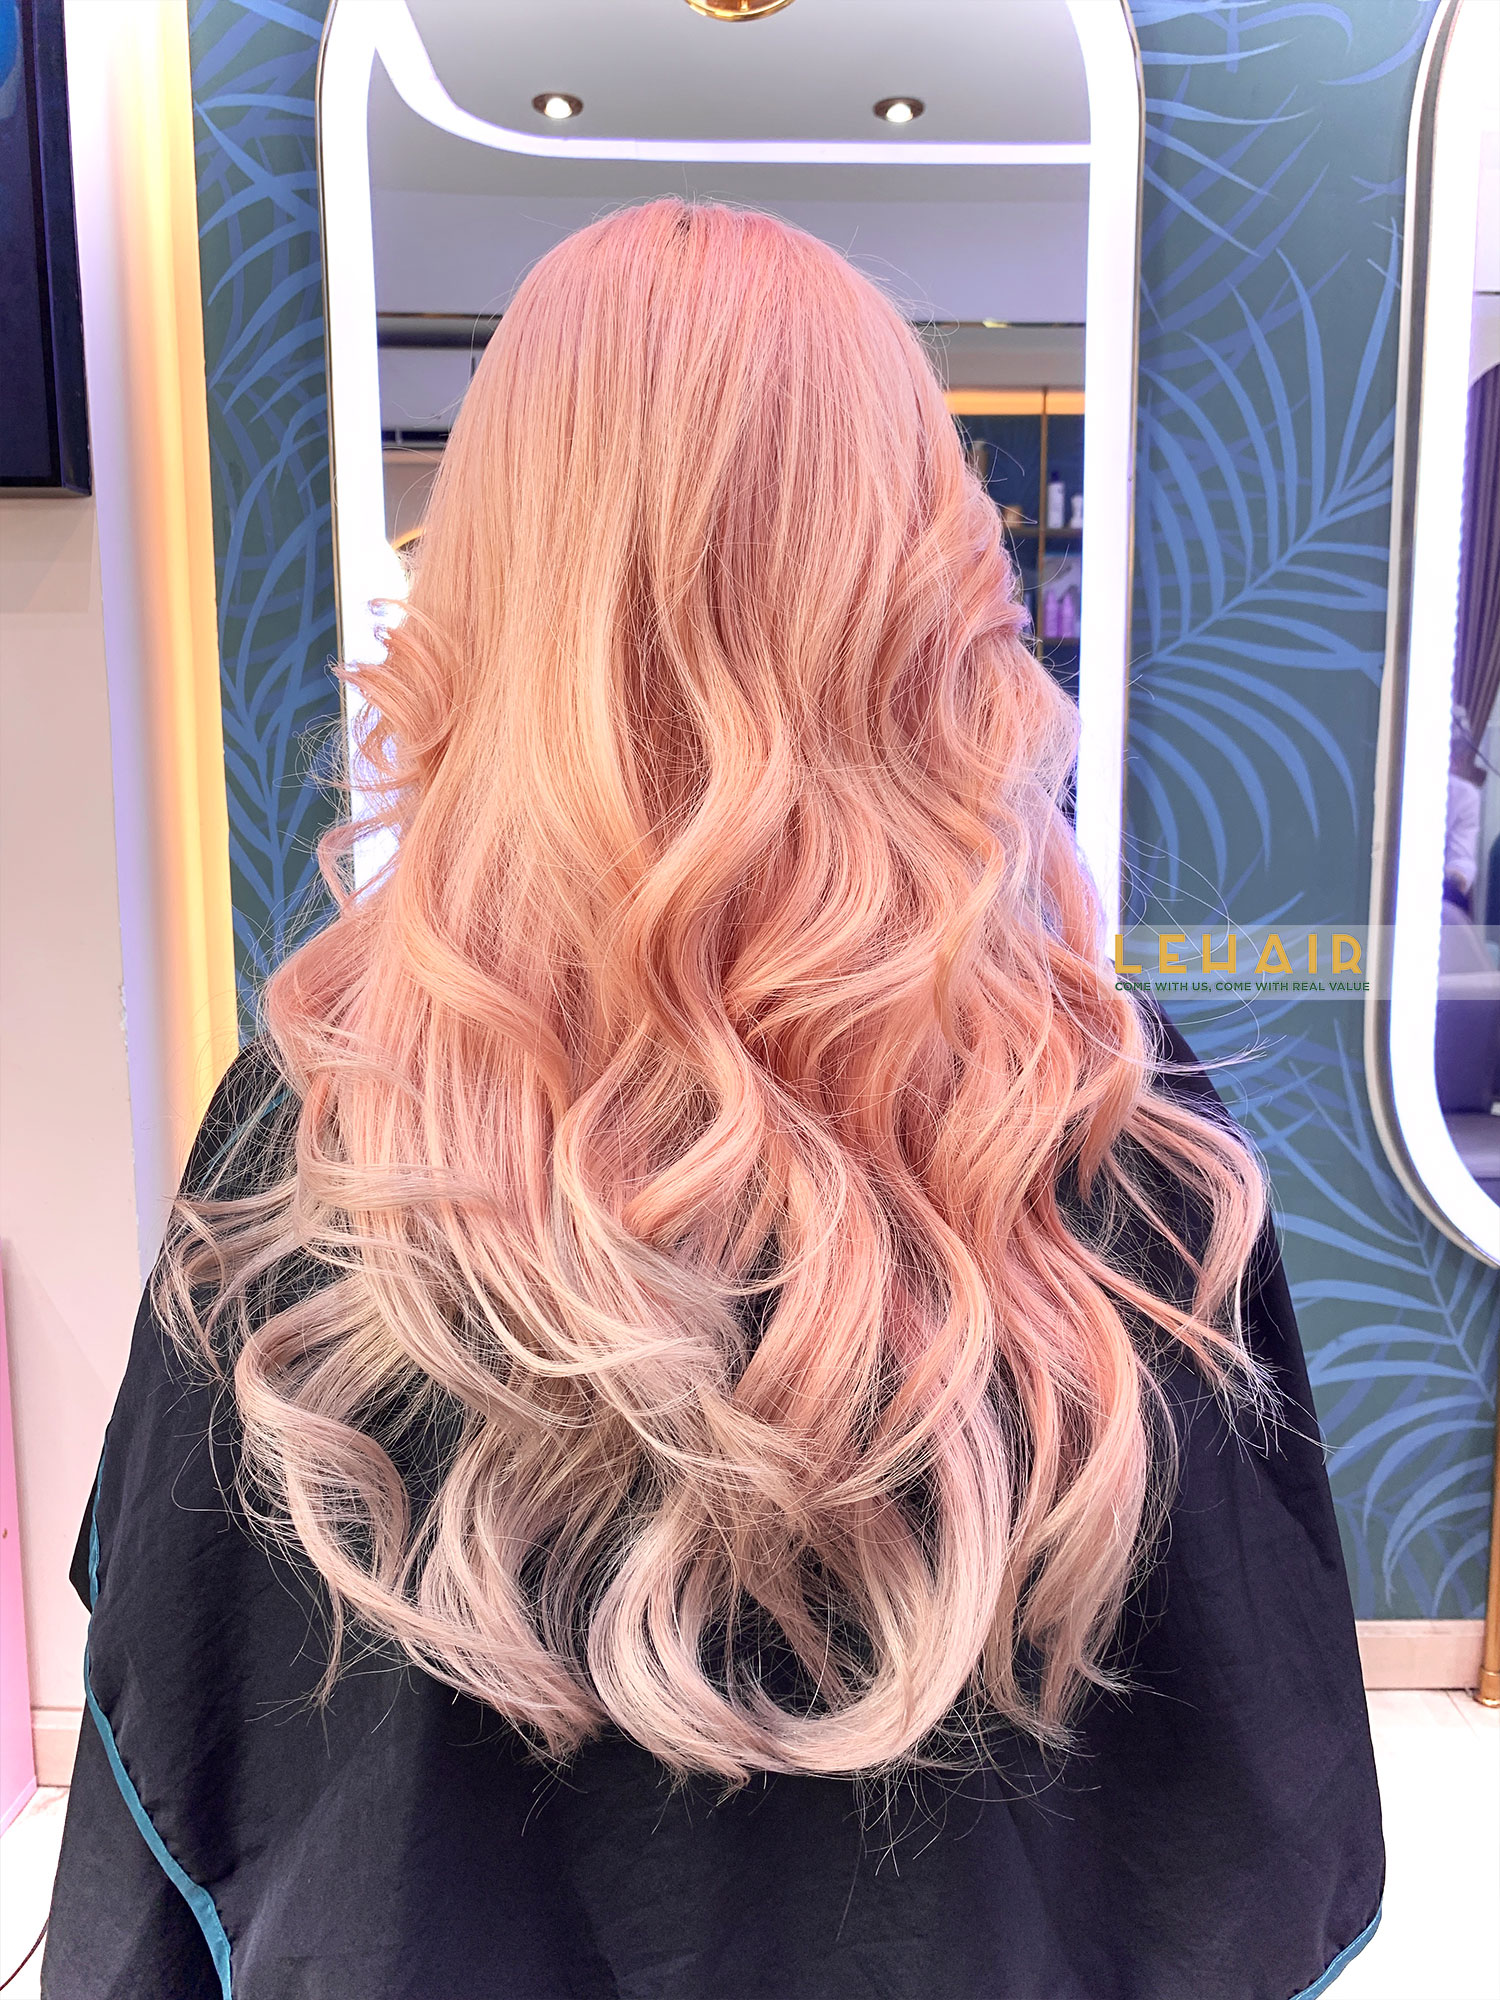 6 kiểu tóc nhuộm hồng pastel xinh xắn trong trẻo dễ thương nhất 2021